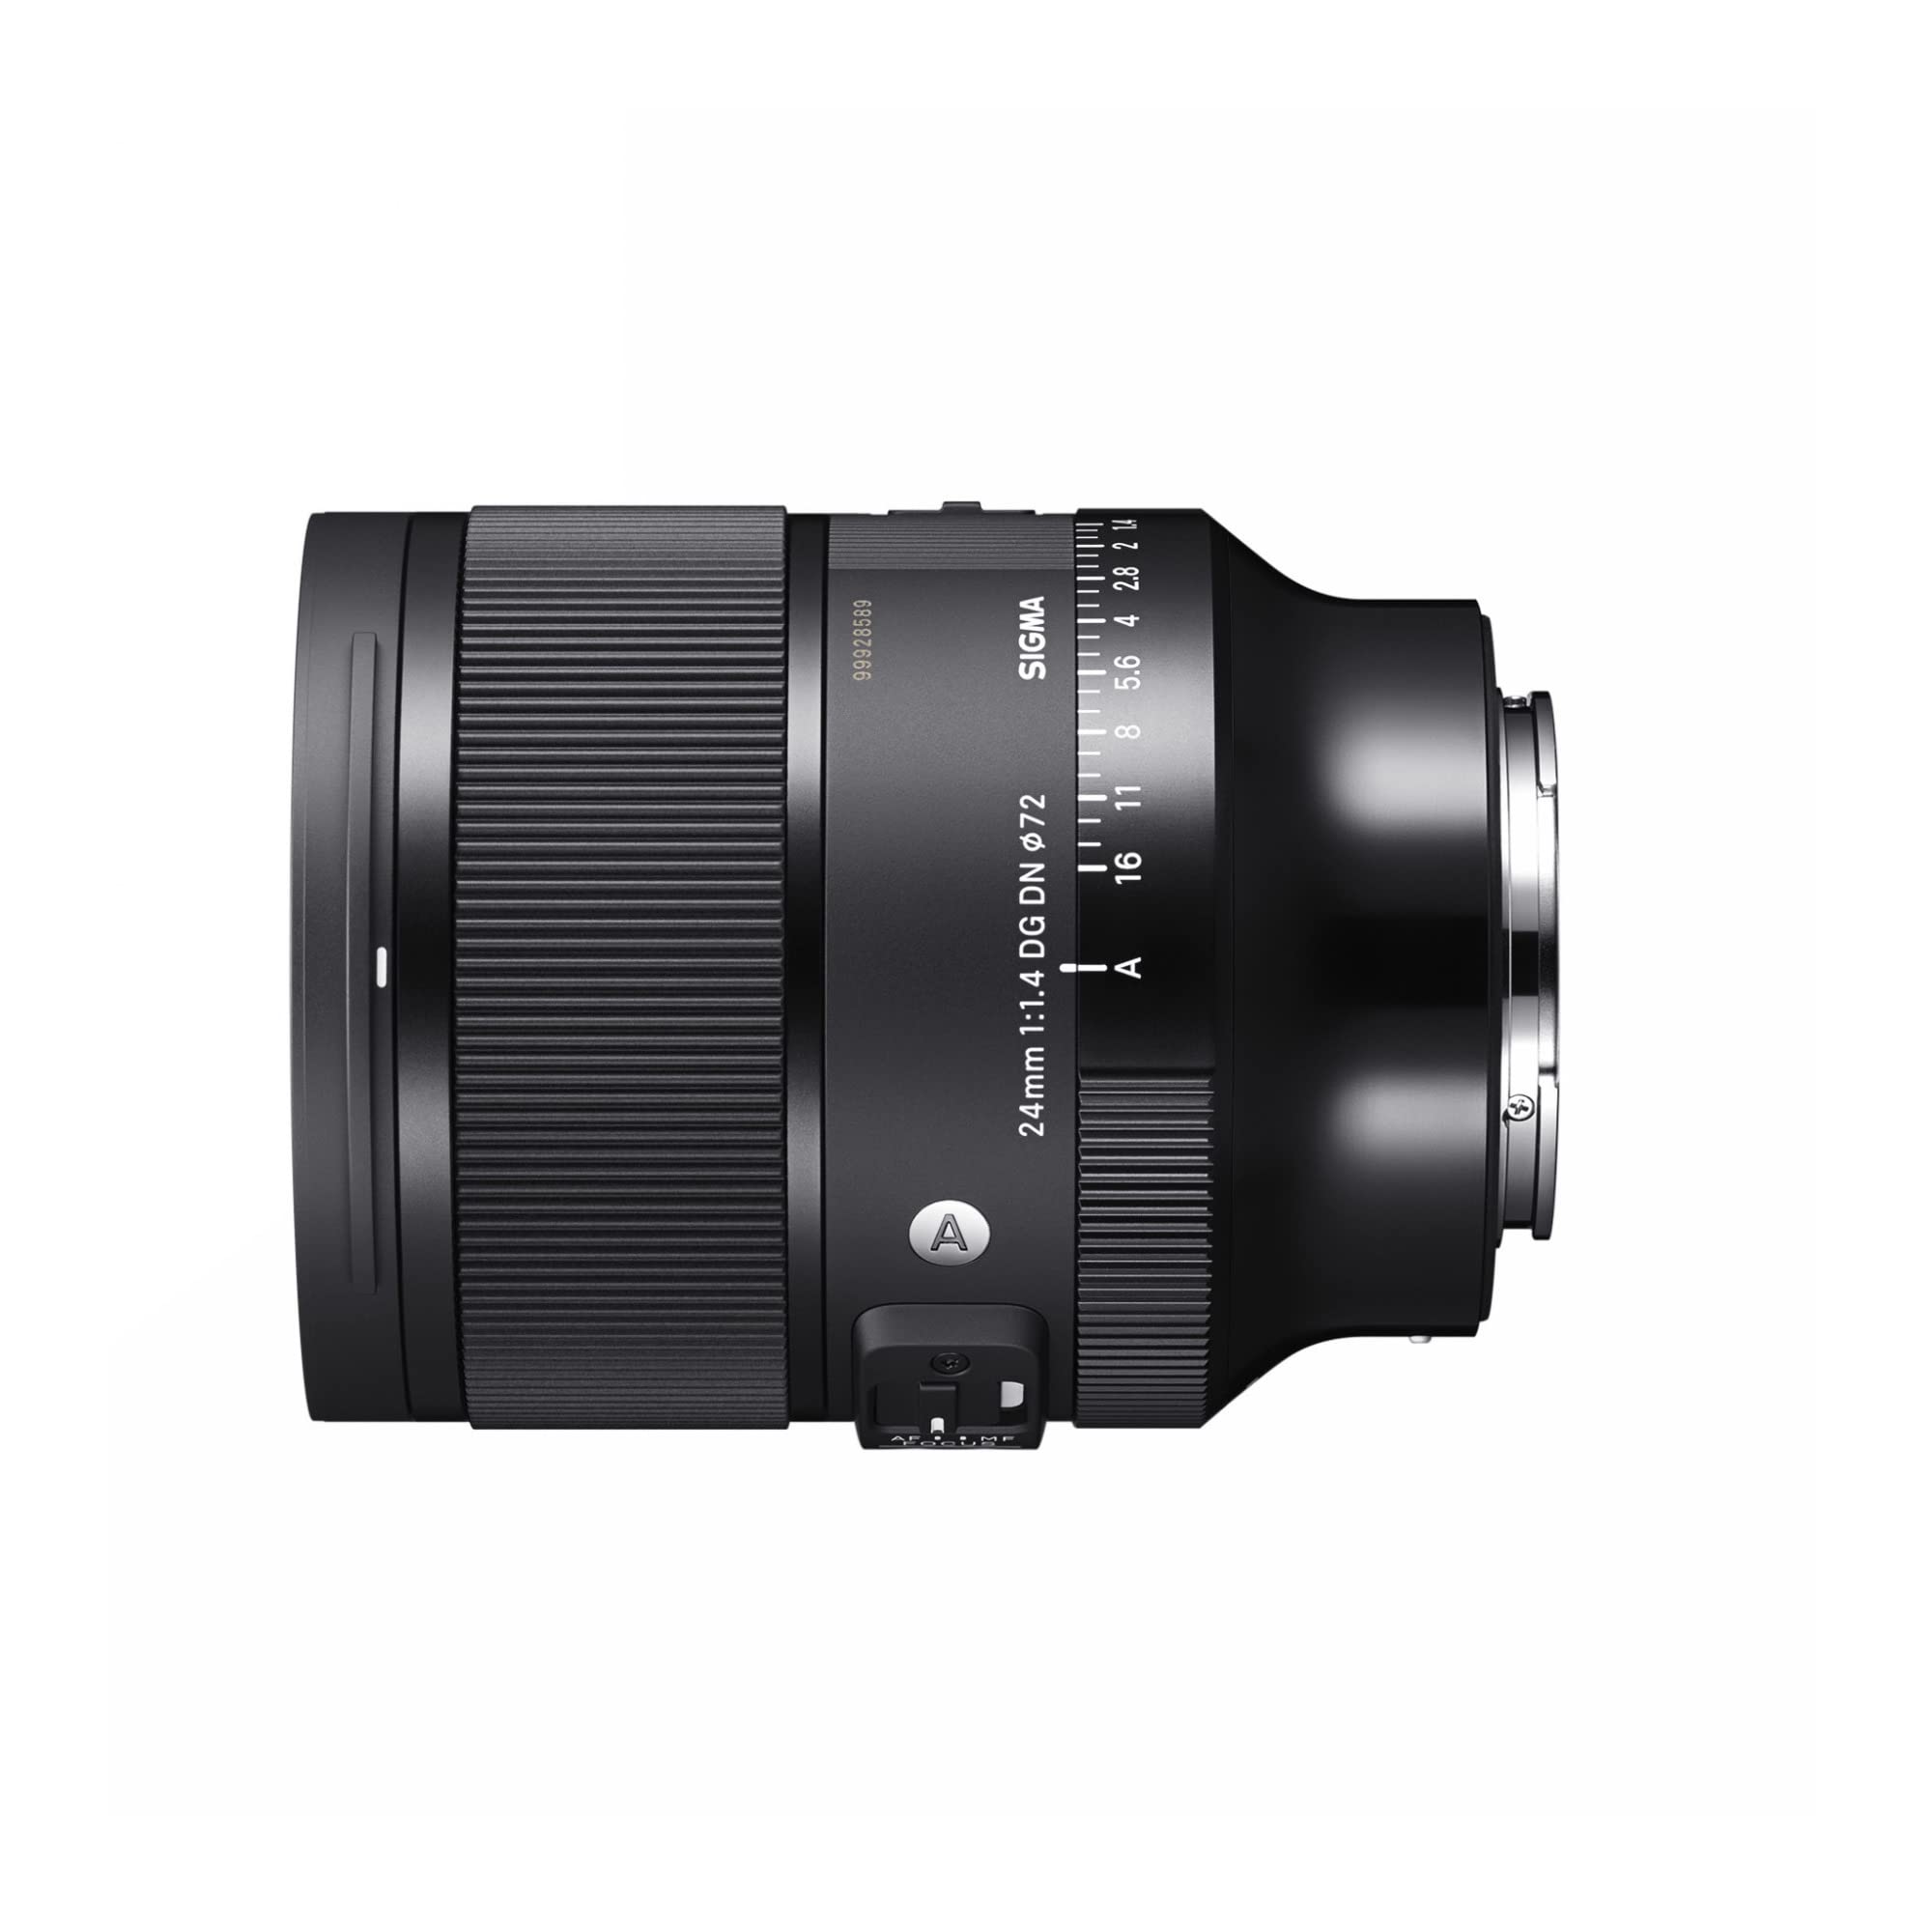 SIGMA シグマ Sony Eマウント レンズ 24mm F1.4 DG DN 単焦点 広角 フルサイズ Art ミラーレス 専用